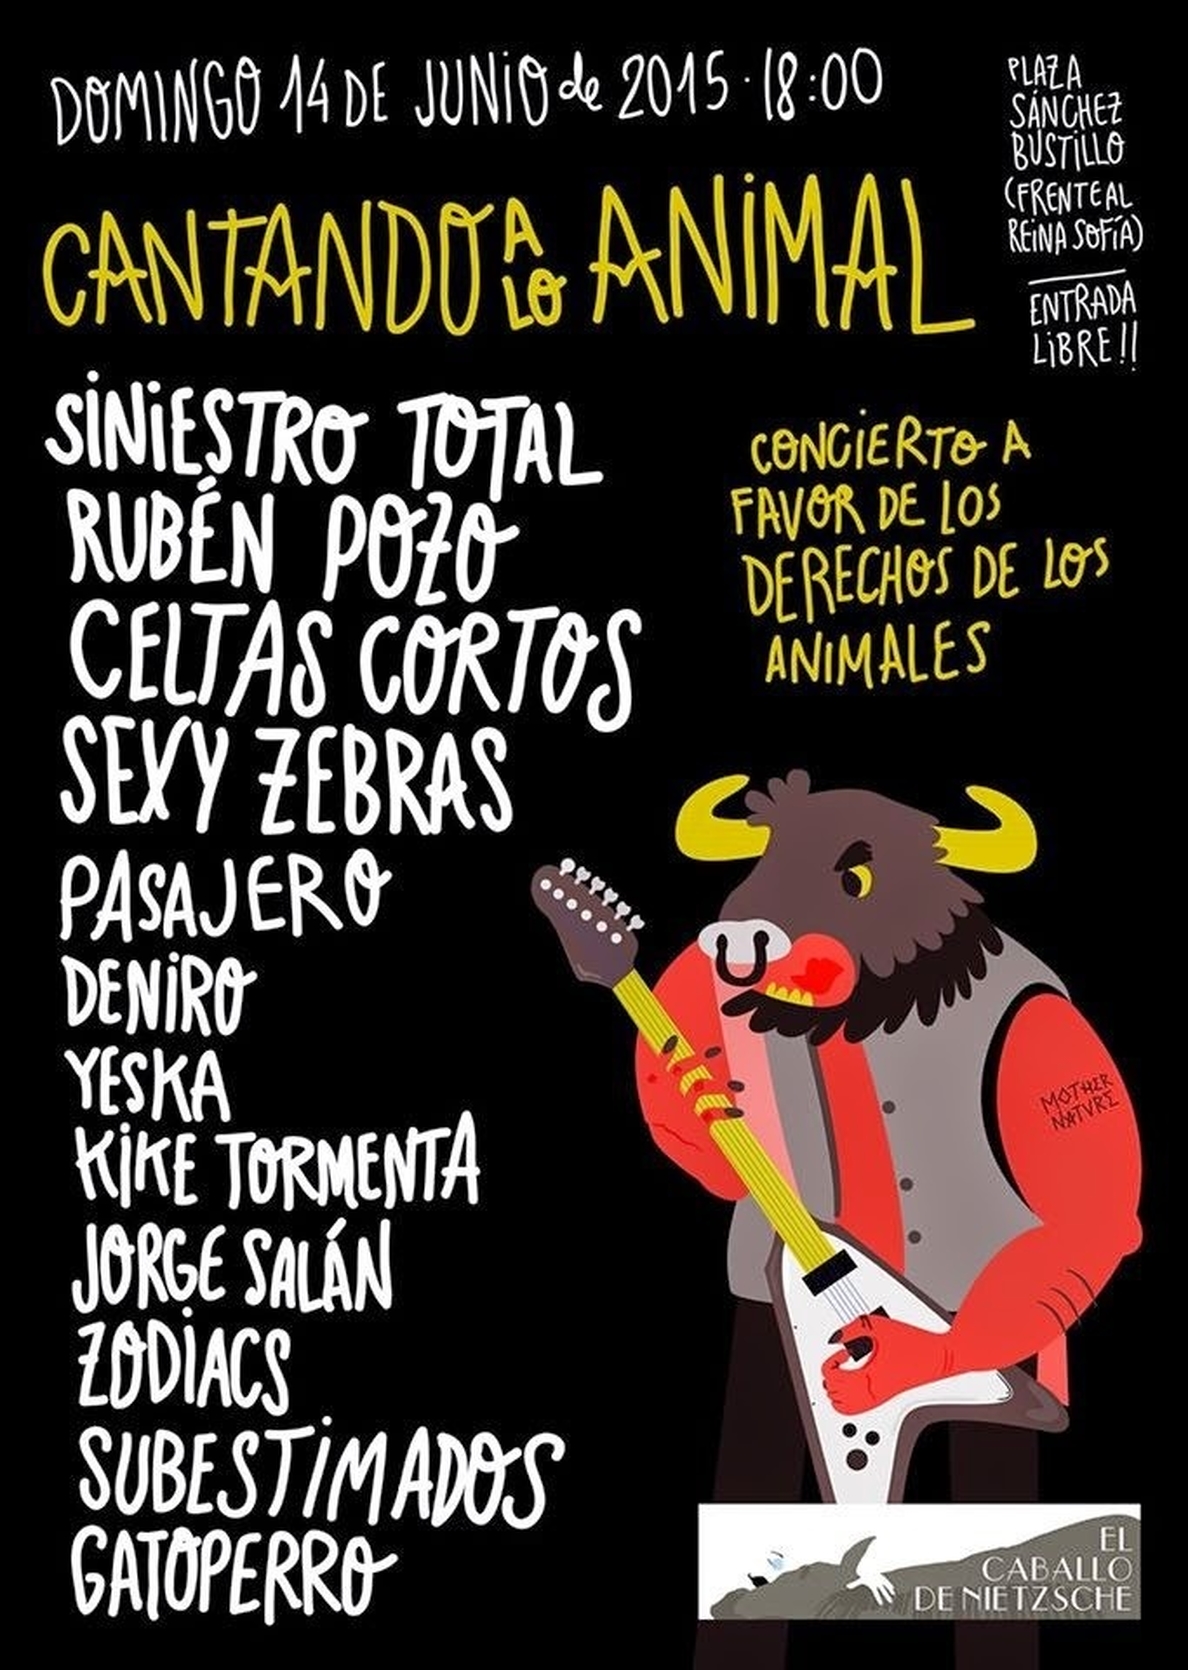 Festival gratuito por los derechos de los animales el 14 de junio en Madrid